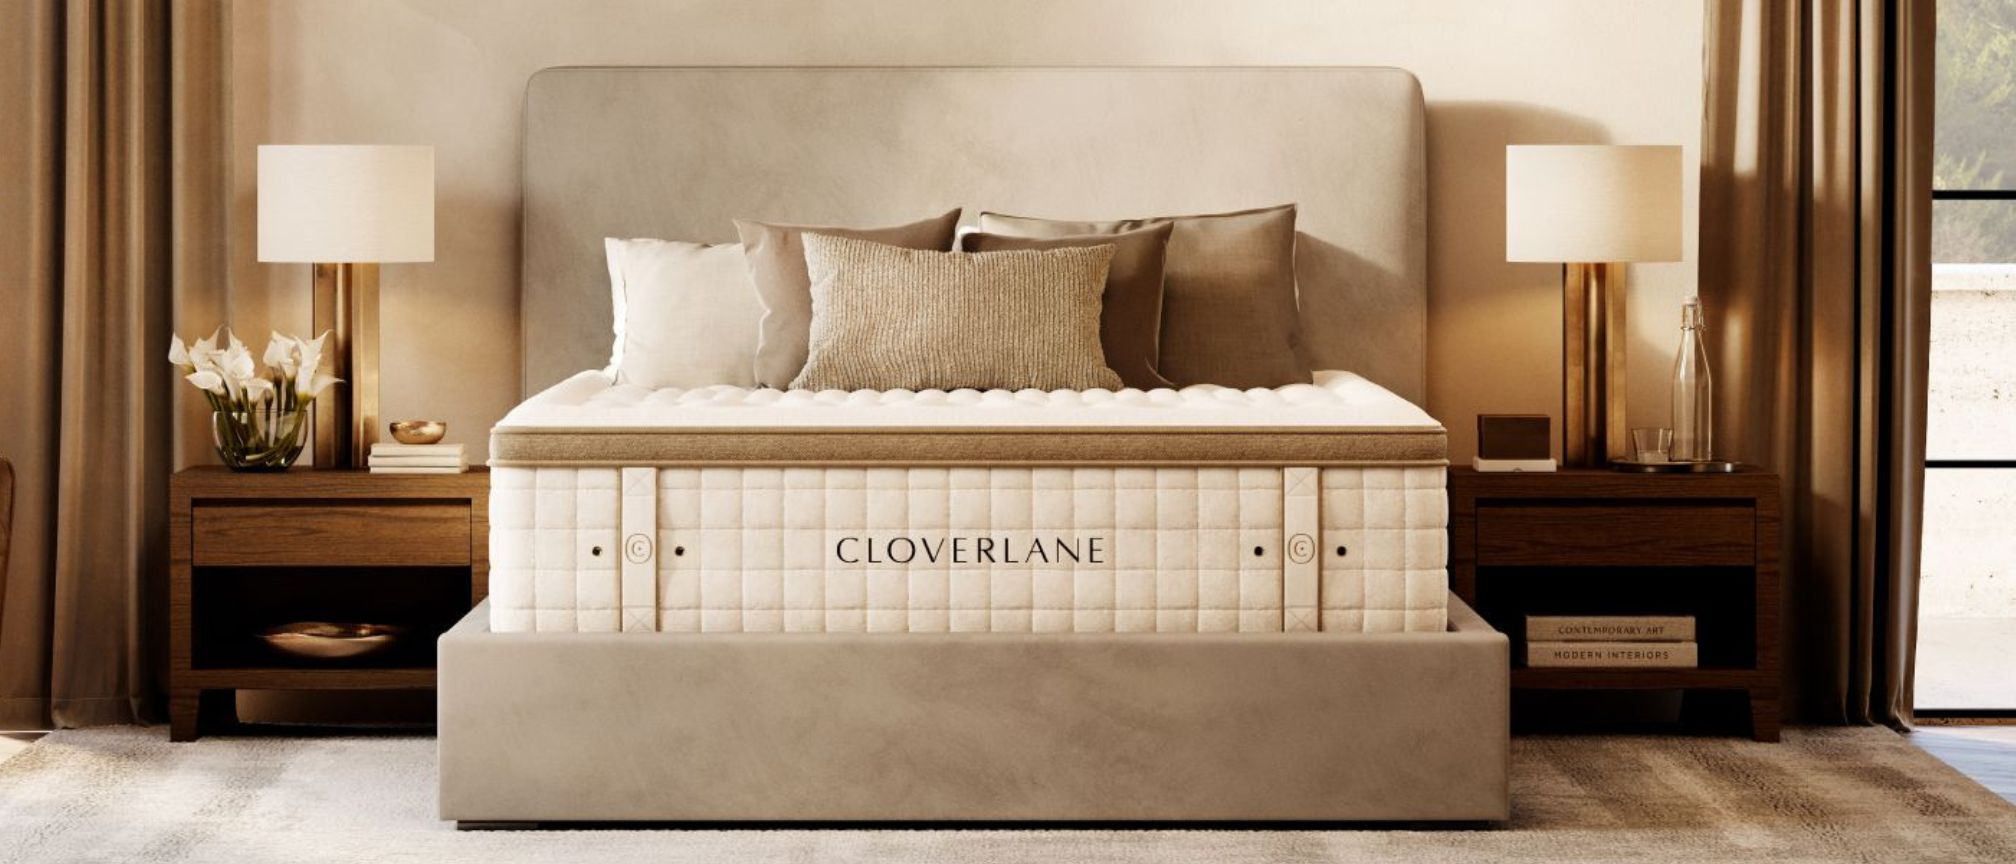 Şık ve nötr bir yatak odasında bej bir yatak temeli üzerine yerleştirilen Cloverlane Hybrid yatak